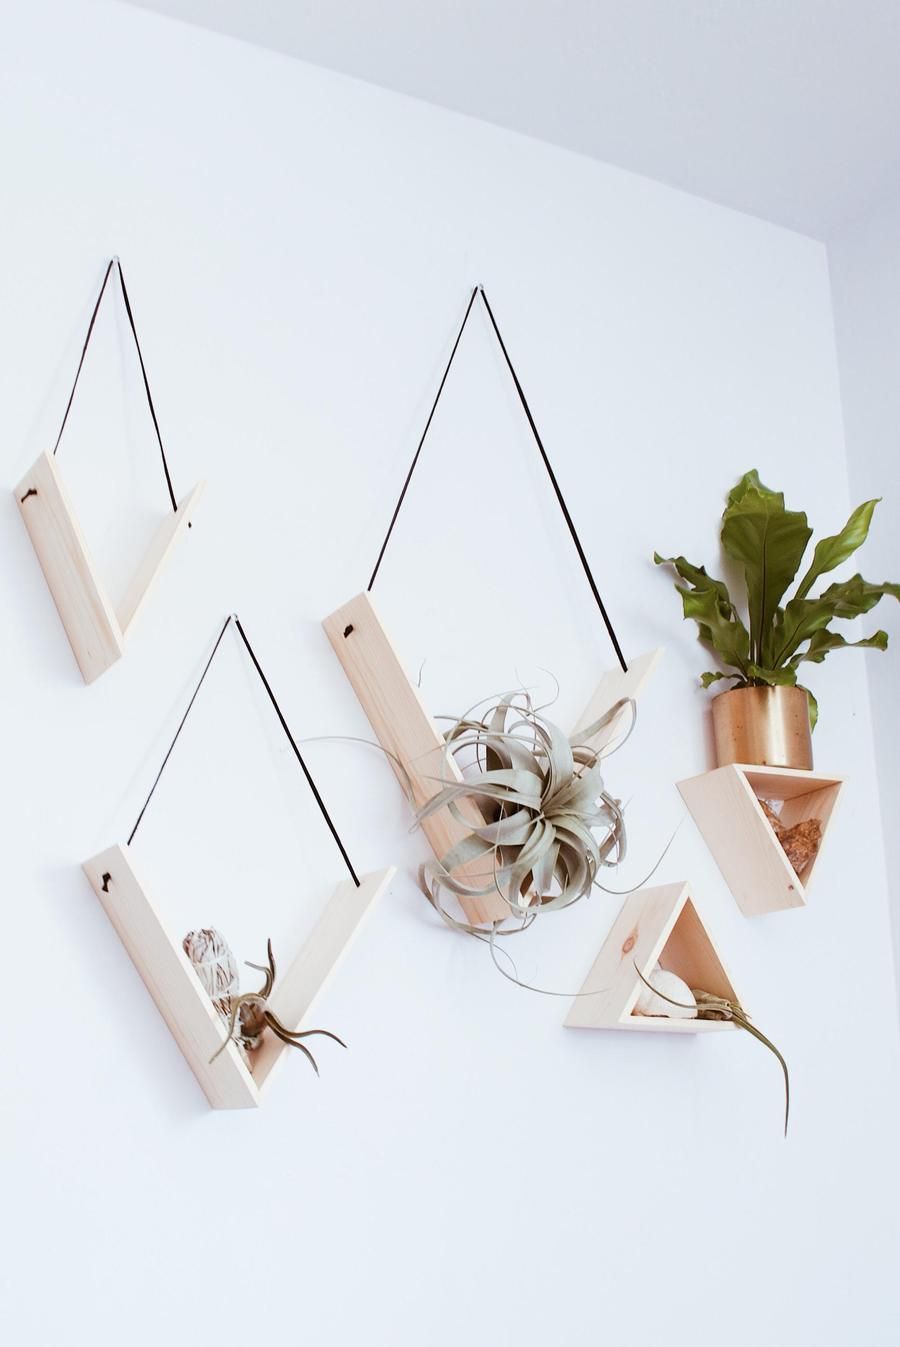 Set of 5 Handmade Triangle Shelves - Set of 5 Handmade Triangle Shelves -   17 diy Interieur kot ideas